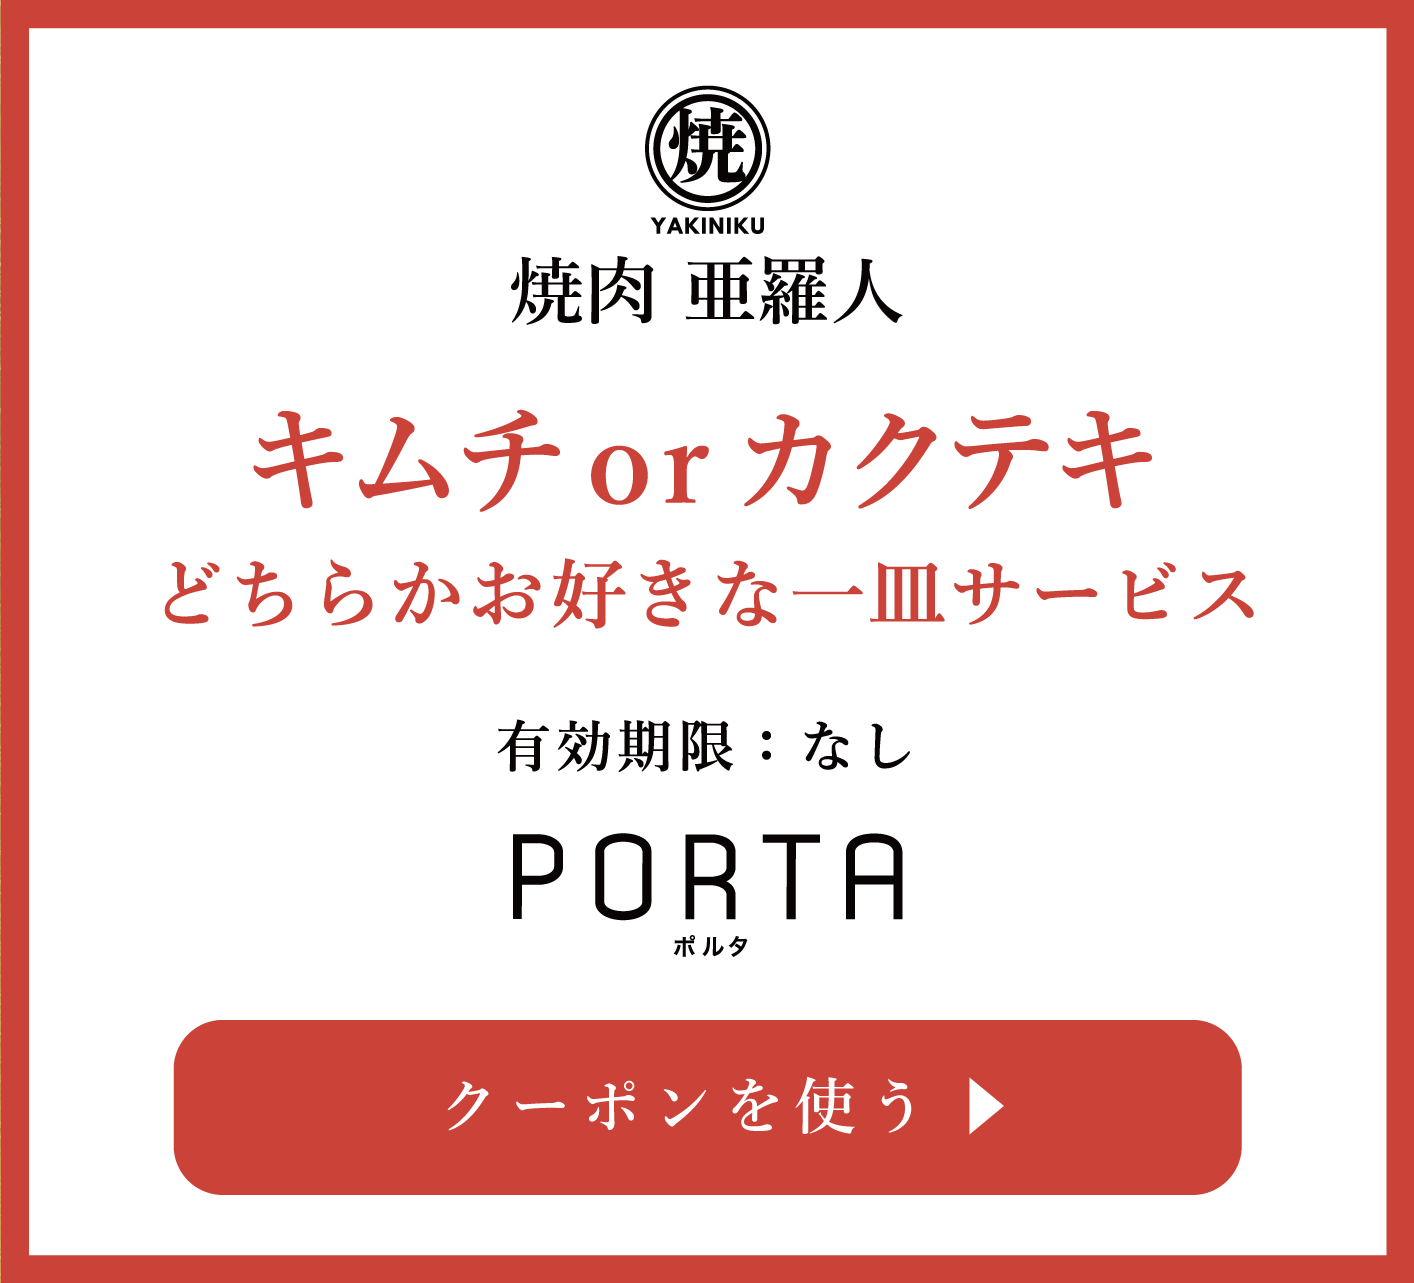 焼肉 亜羅人 富士吉田市 山梨の人気焼肉店10選 Porta